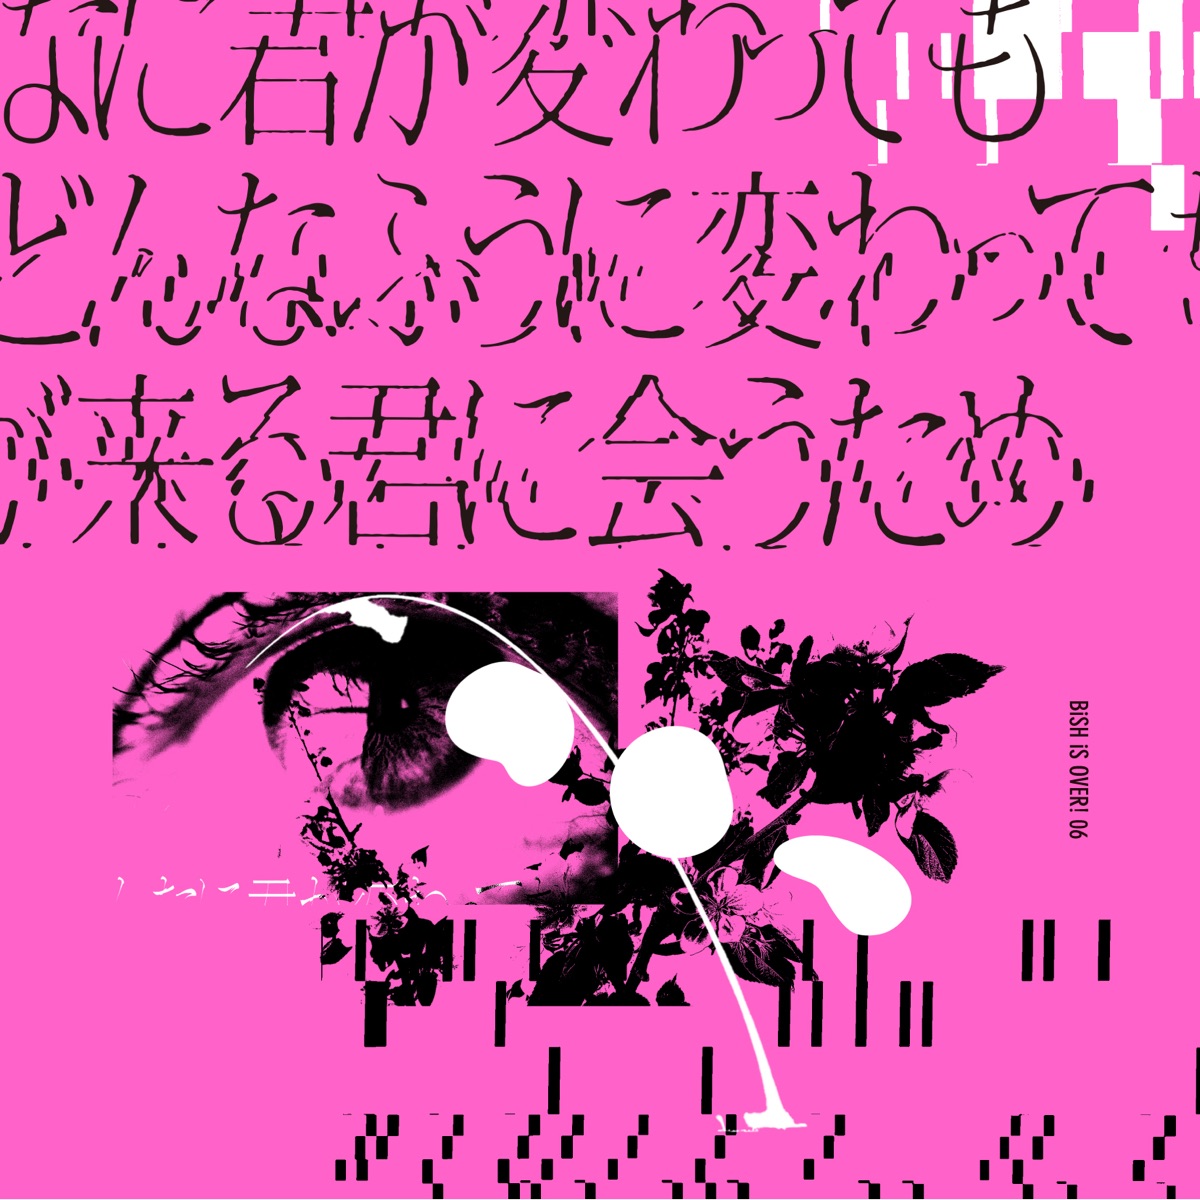 Cover art for『BiSH - ハッピーエンドじゃなくても』from the release『Donna ni Kimi ga Kawattemo Boku ga Donna Fuu ni Kawattemo Ashita ga Kuru Kimi ni Au Tame